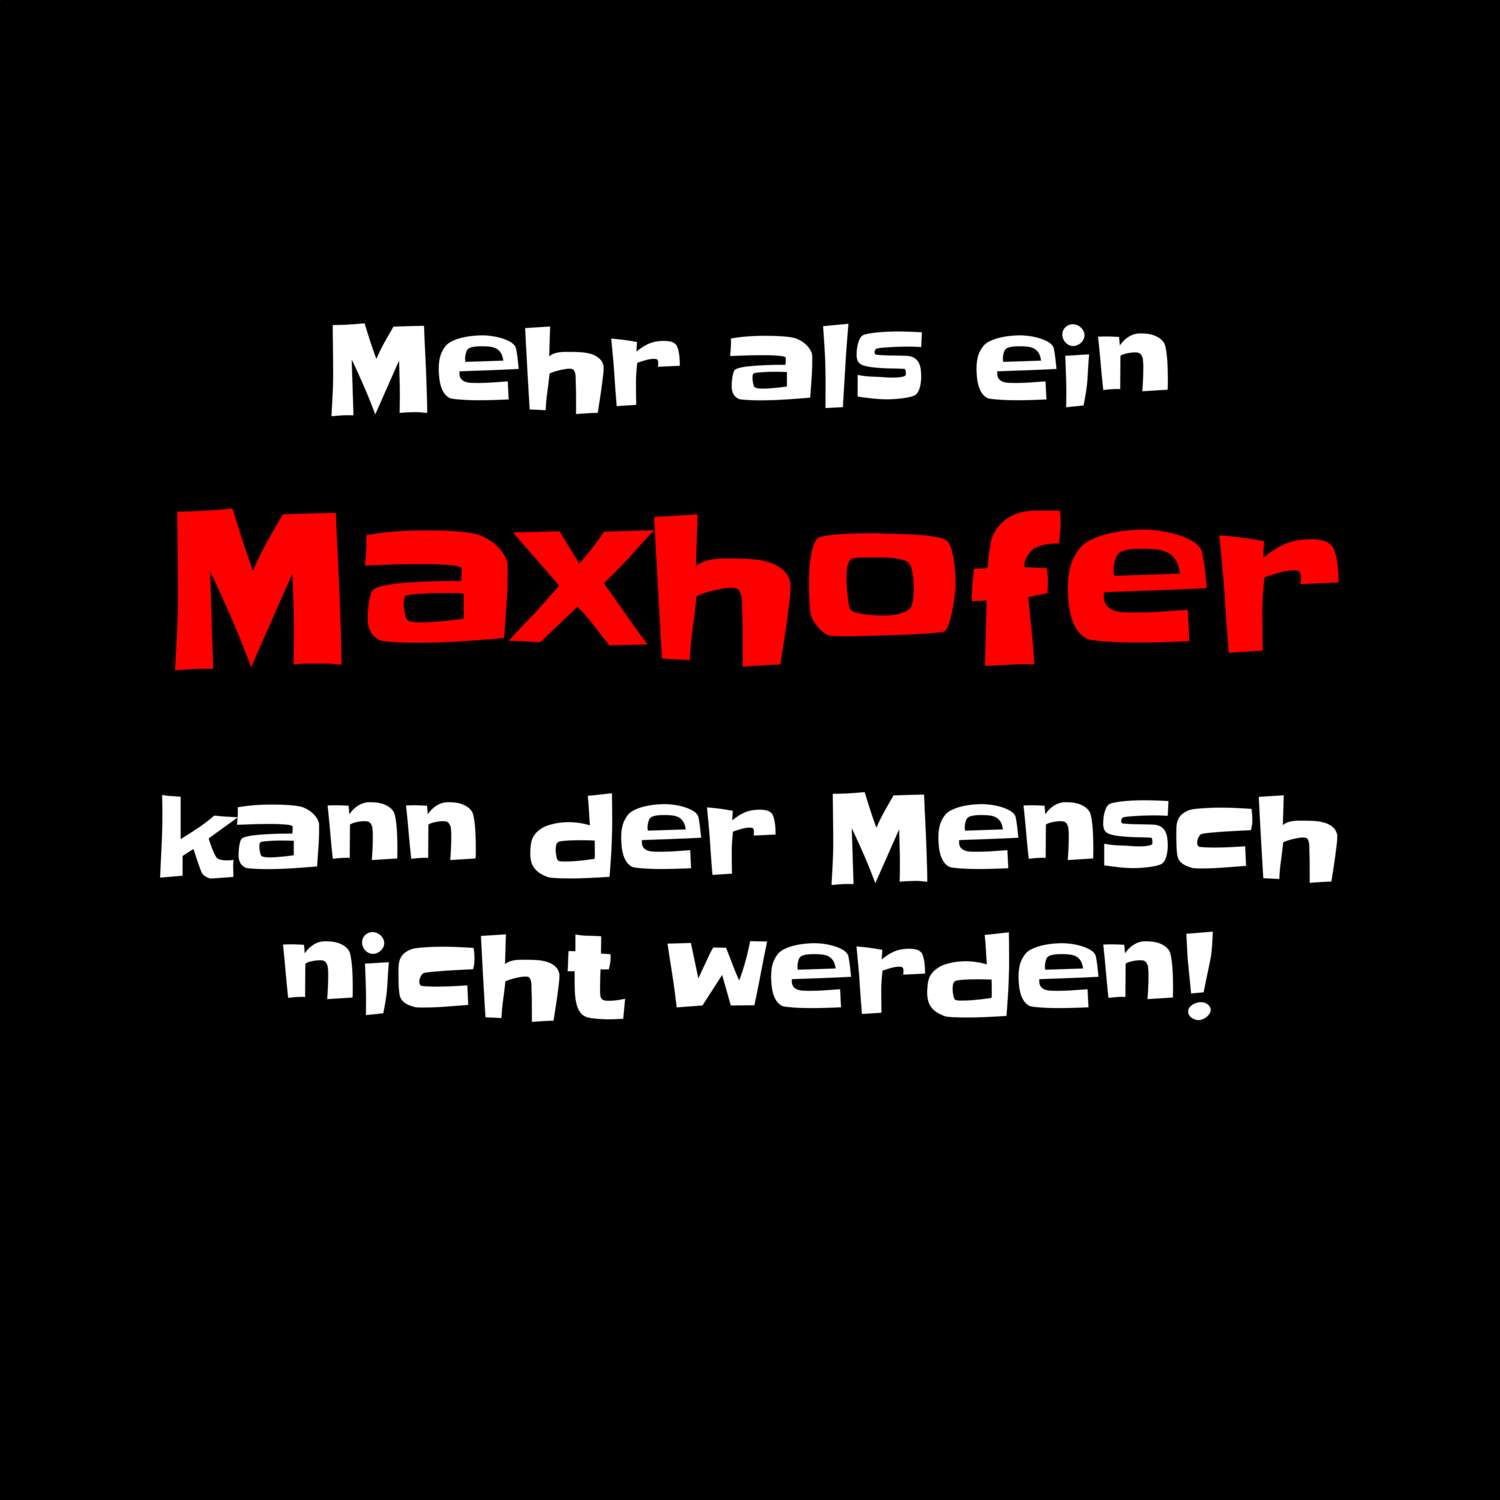 Maxhof T-Shirt »Mehr als ein«